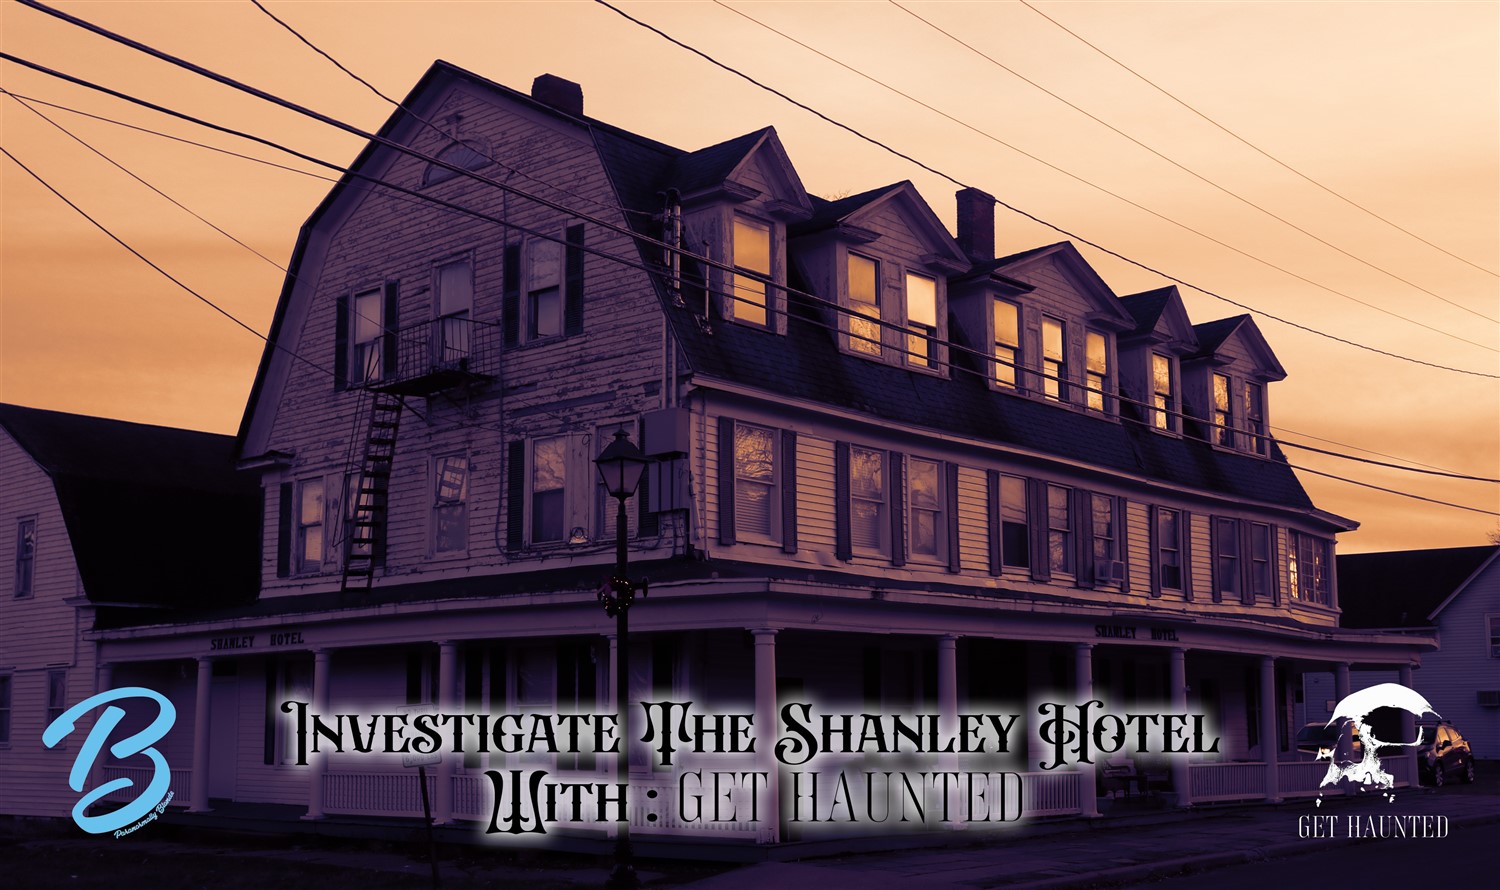 Investigate the Shanley Hotel! With Get Haunted! on mar. 25, 17:00@Shanley Hotel - Compra entradas y obtén información enThriller Events thriller.events